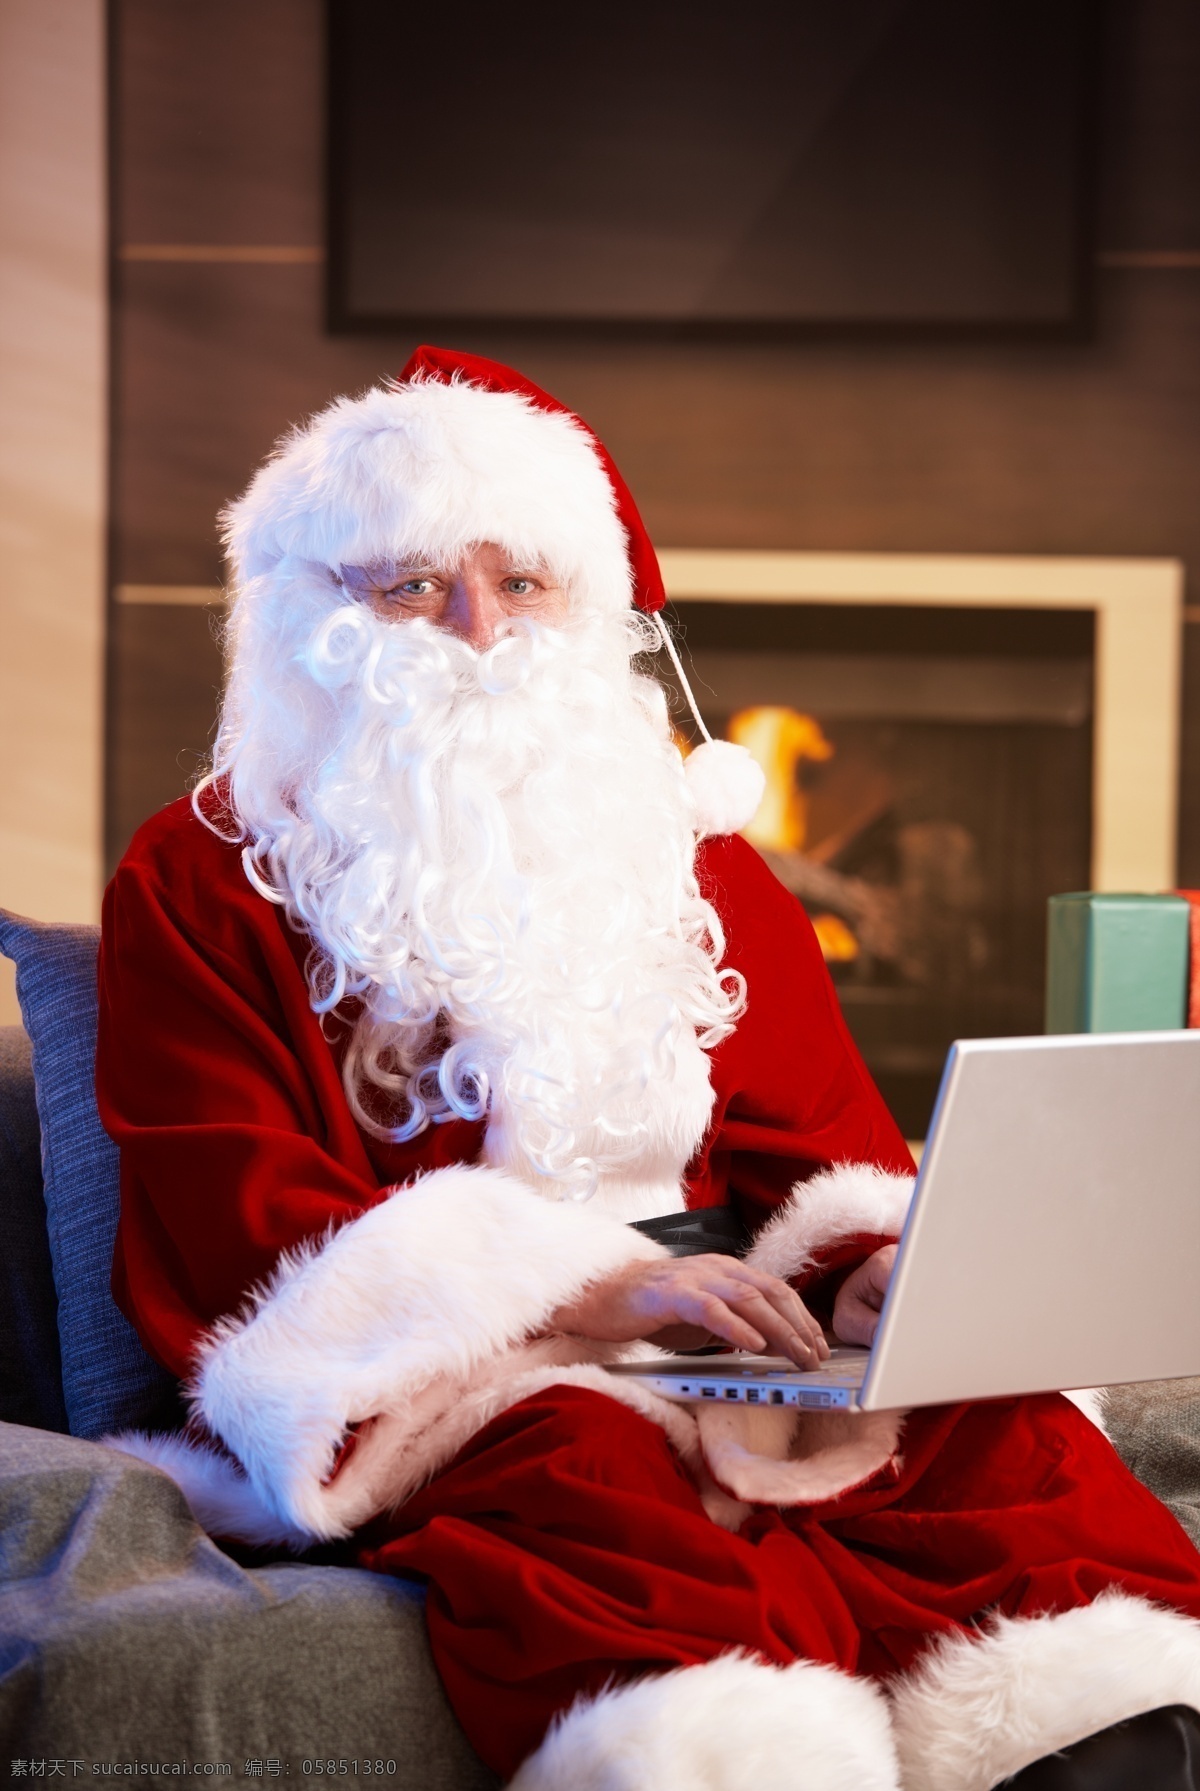 电脑 圣诞老人 圣诞主题 圣诞节 节日素材 新年素材 手提电脑 笔记本电脑 老人图片 人物图片